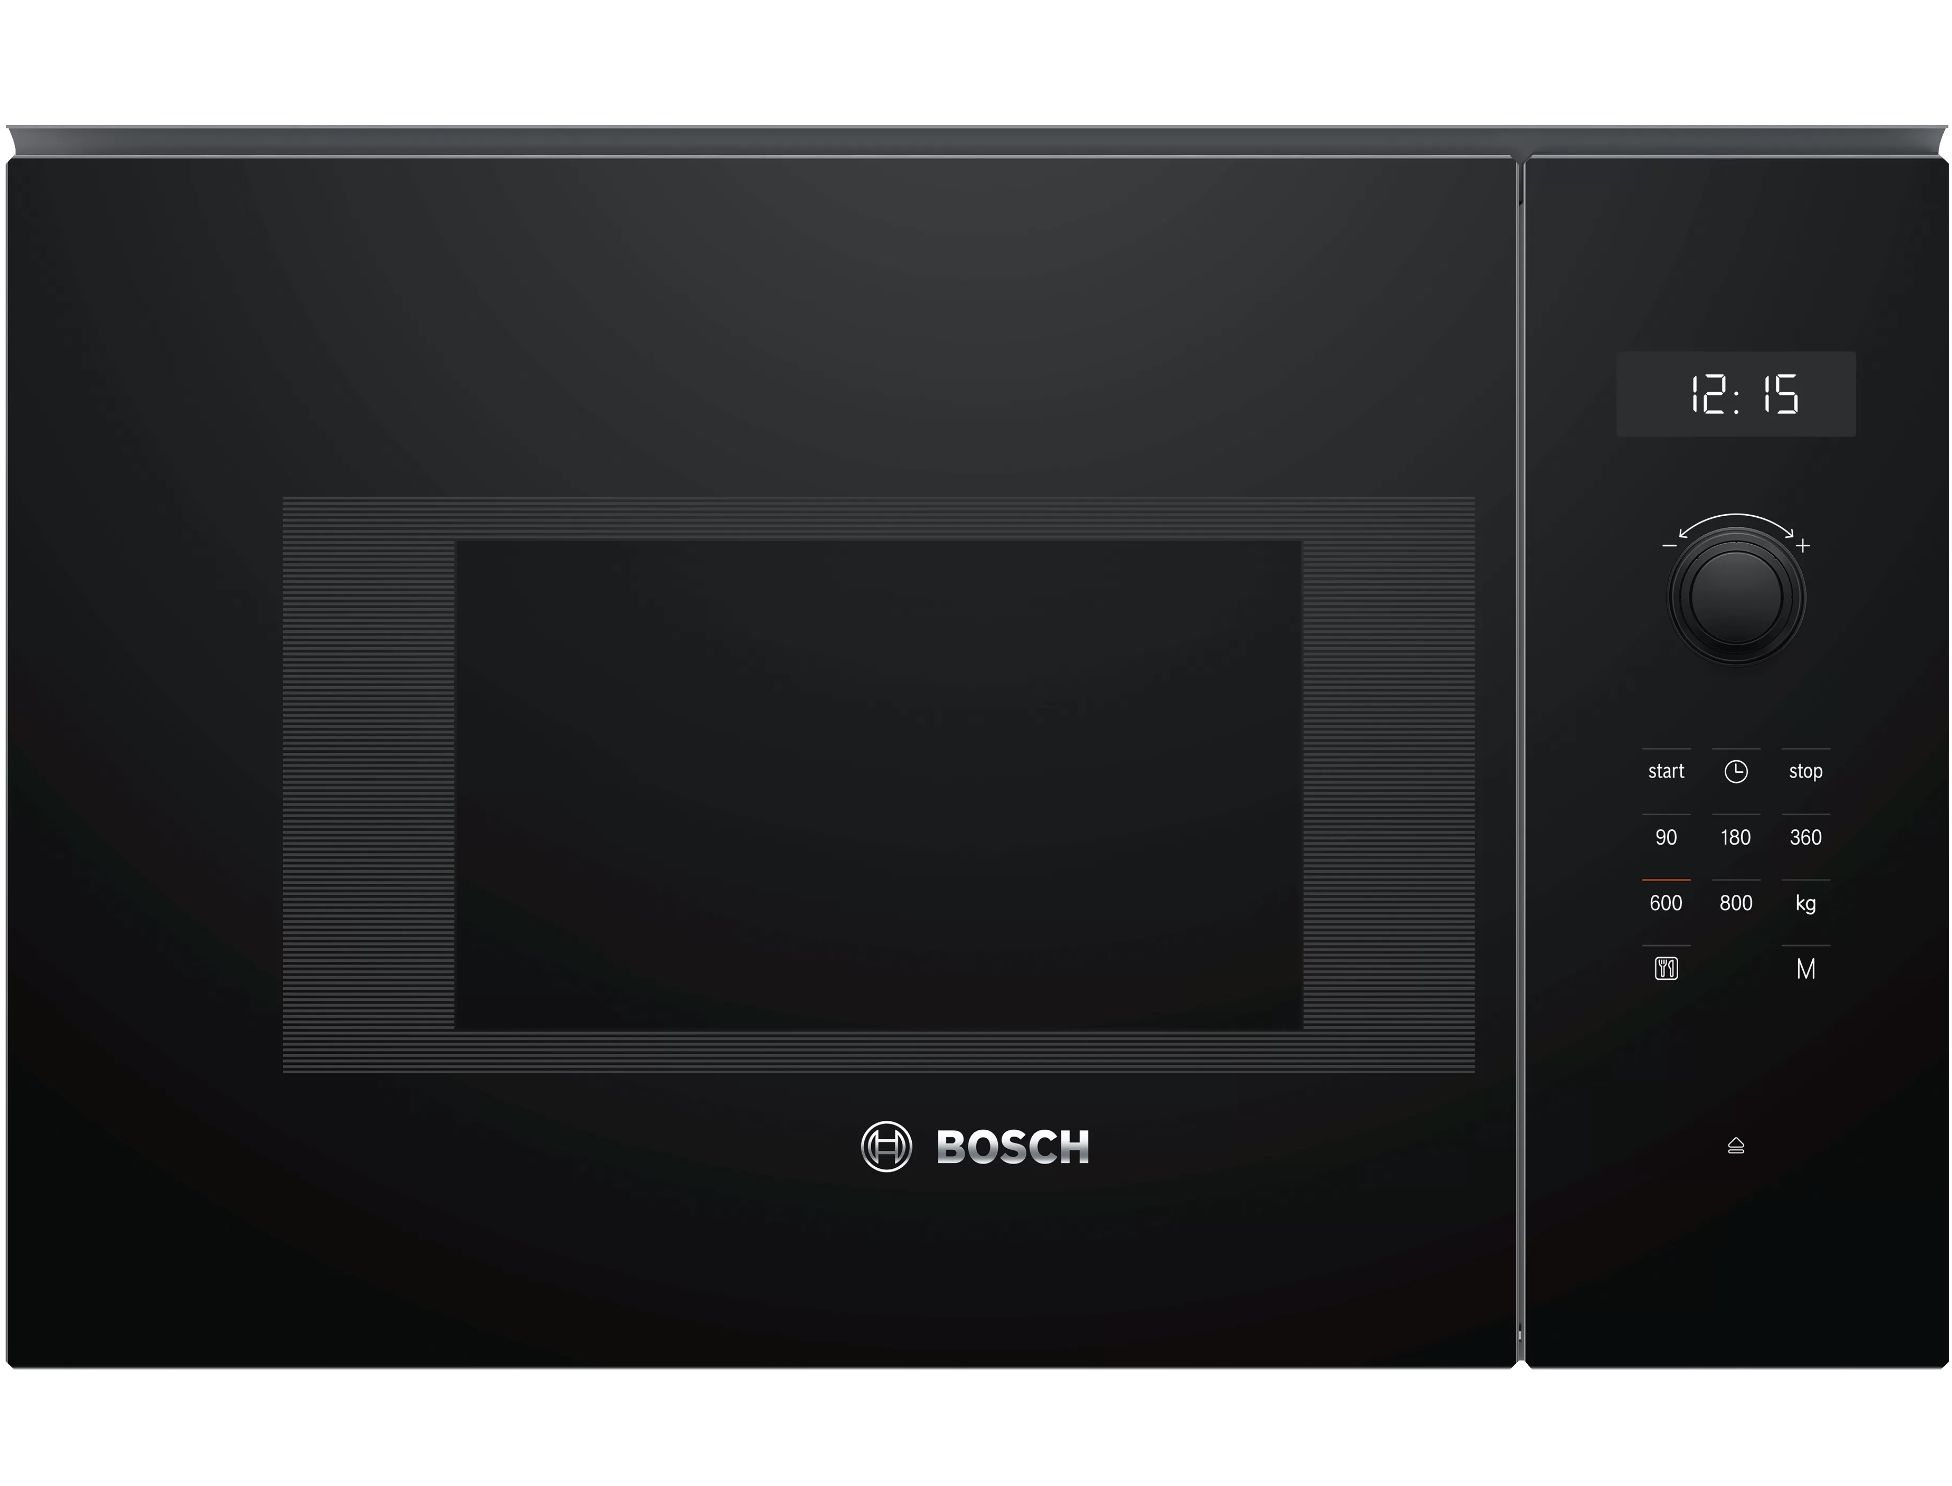 Микроволновая печь встраиваемая Bosch bel524mb0. Микроволновая печь встраиваемая Bosch bfl554ms0. Микроволновая печь Teka MWE 207 Fi Black. Микроволновая печь Bosch bel554ms0.